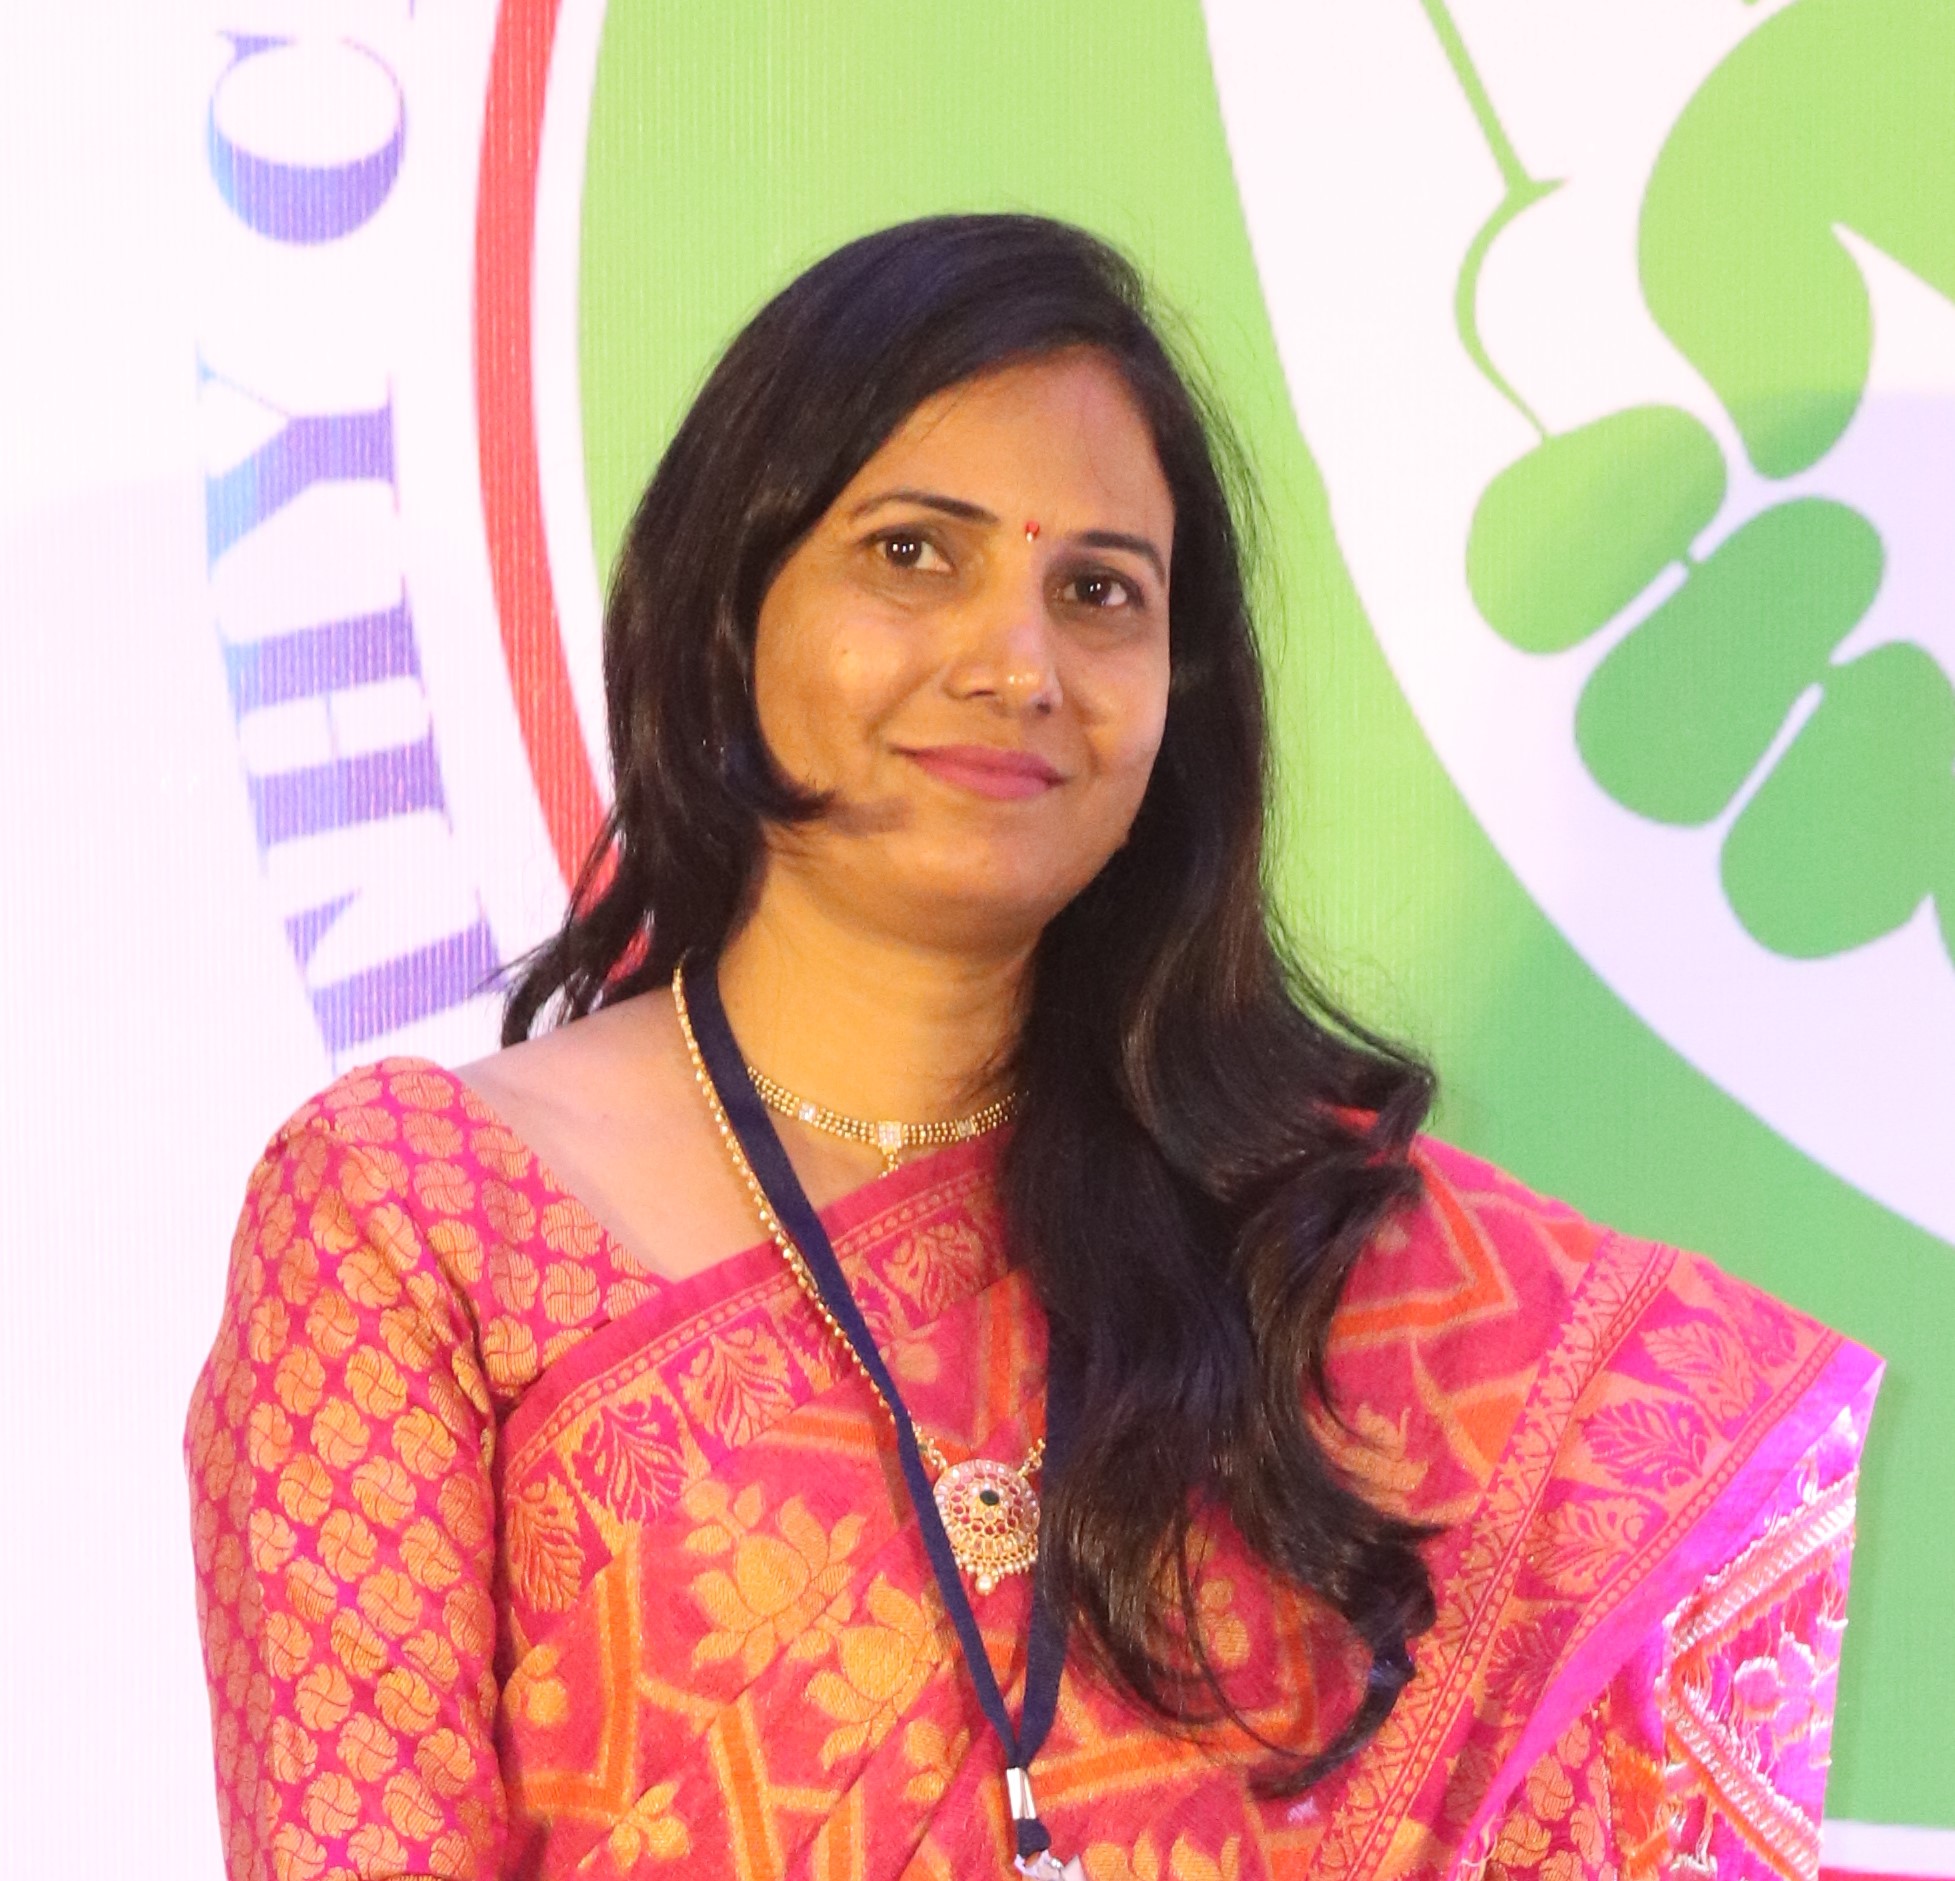 Supriya Yadav- Program Supervisor